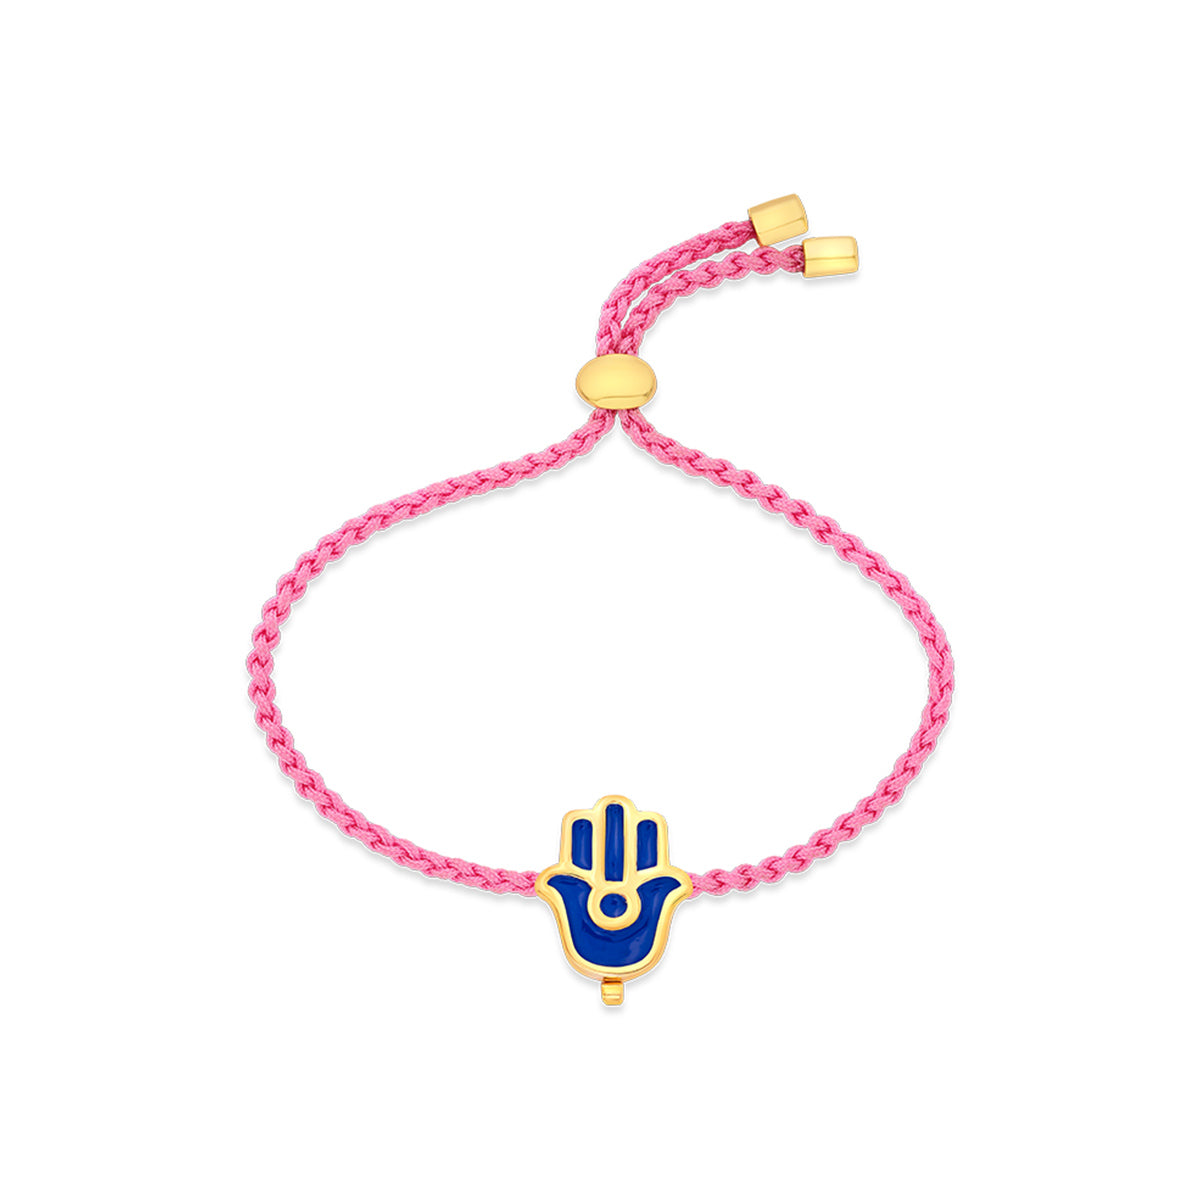 Millennial Pink Knot Bracelet